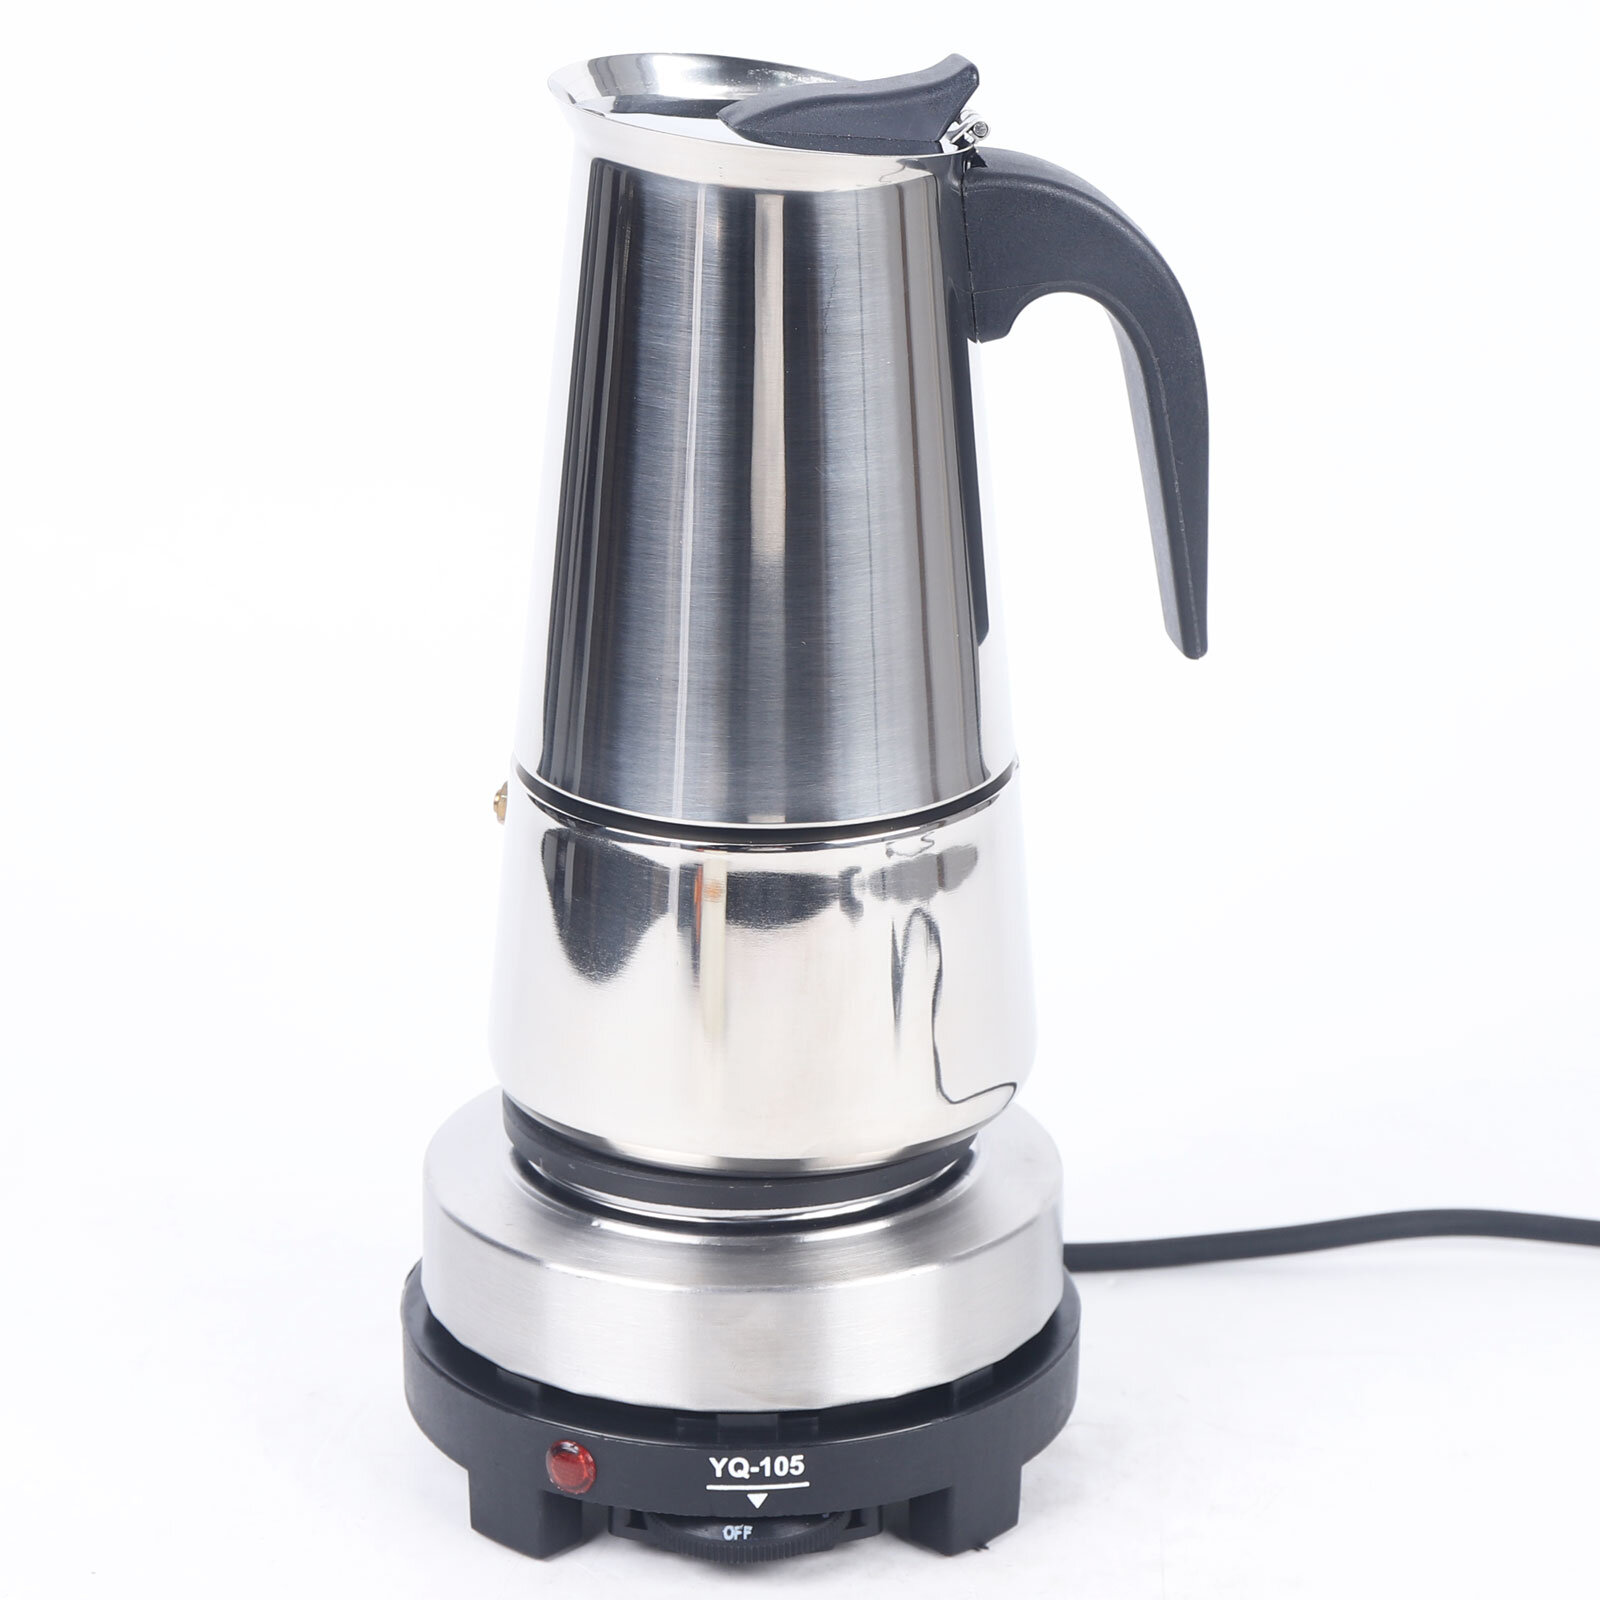 Cooker Espresso Maker, 3 Espresso Mugs Mocha Pot - 1.5 Oz Manual